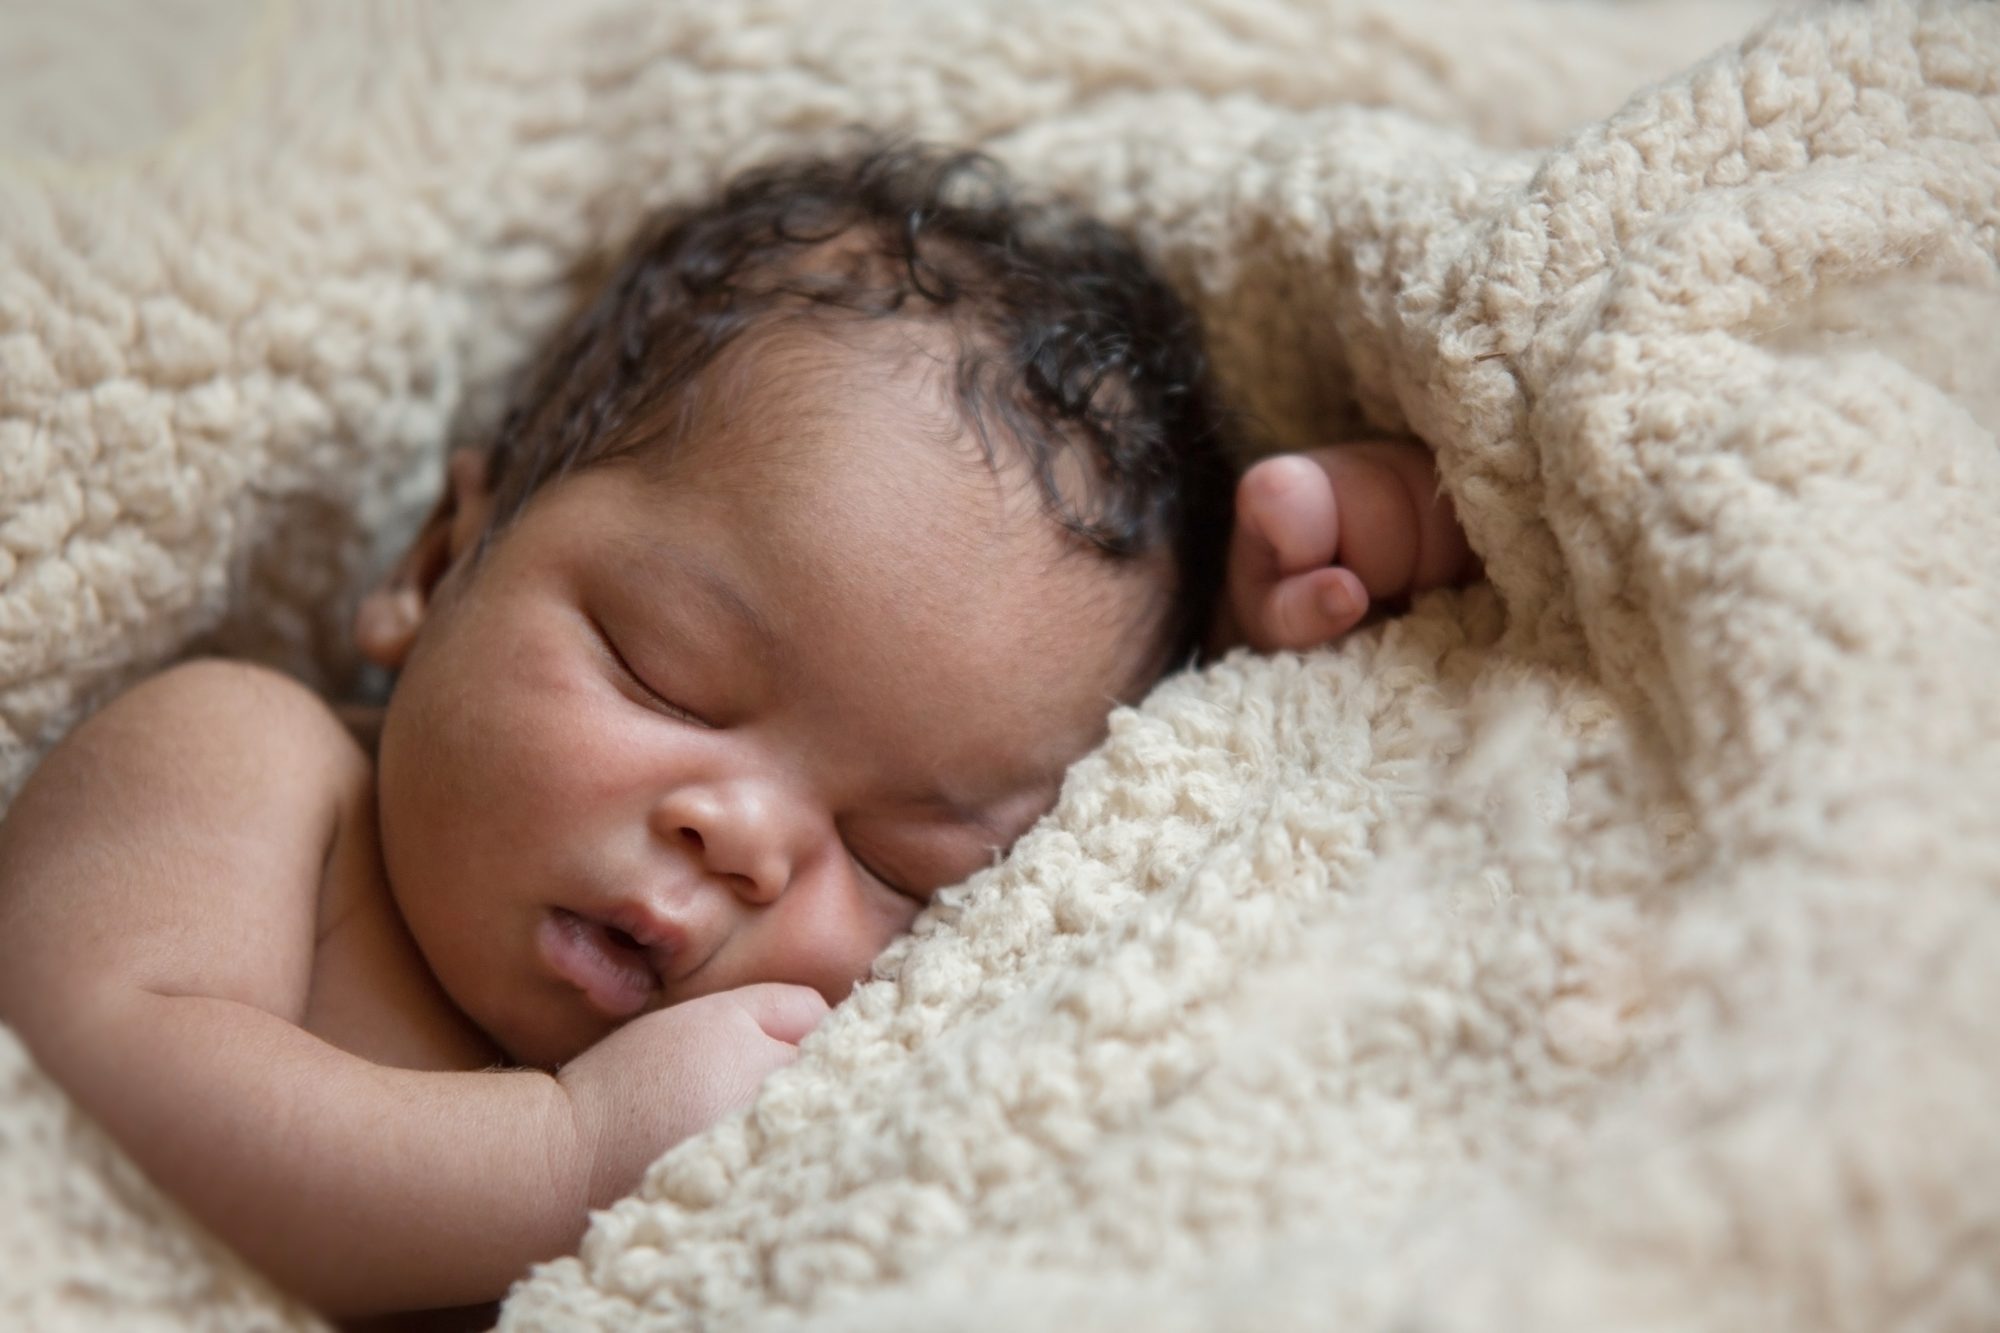 शिशुमा यी कारणले हुनसक्छ क्याल्सियमको कमी, थाहा पाउनुहोस् क्याल्सियमको कमीका लक्षण